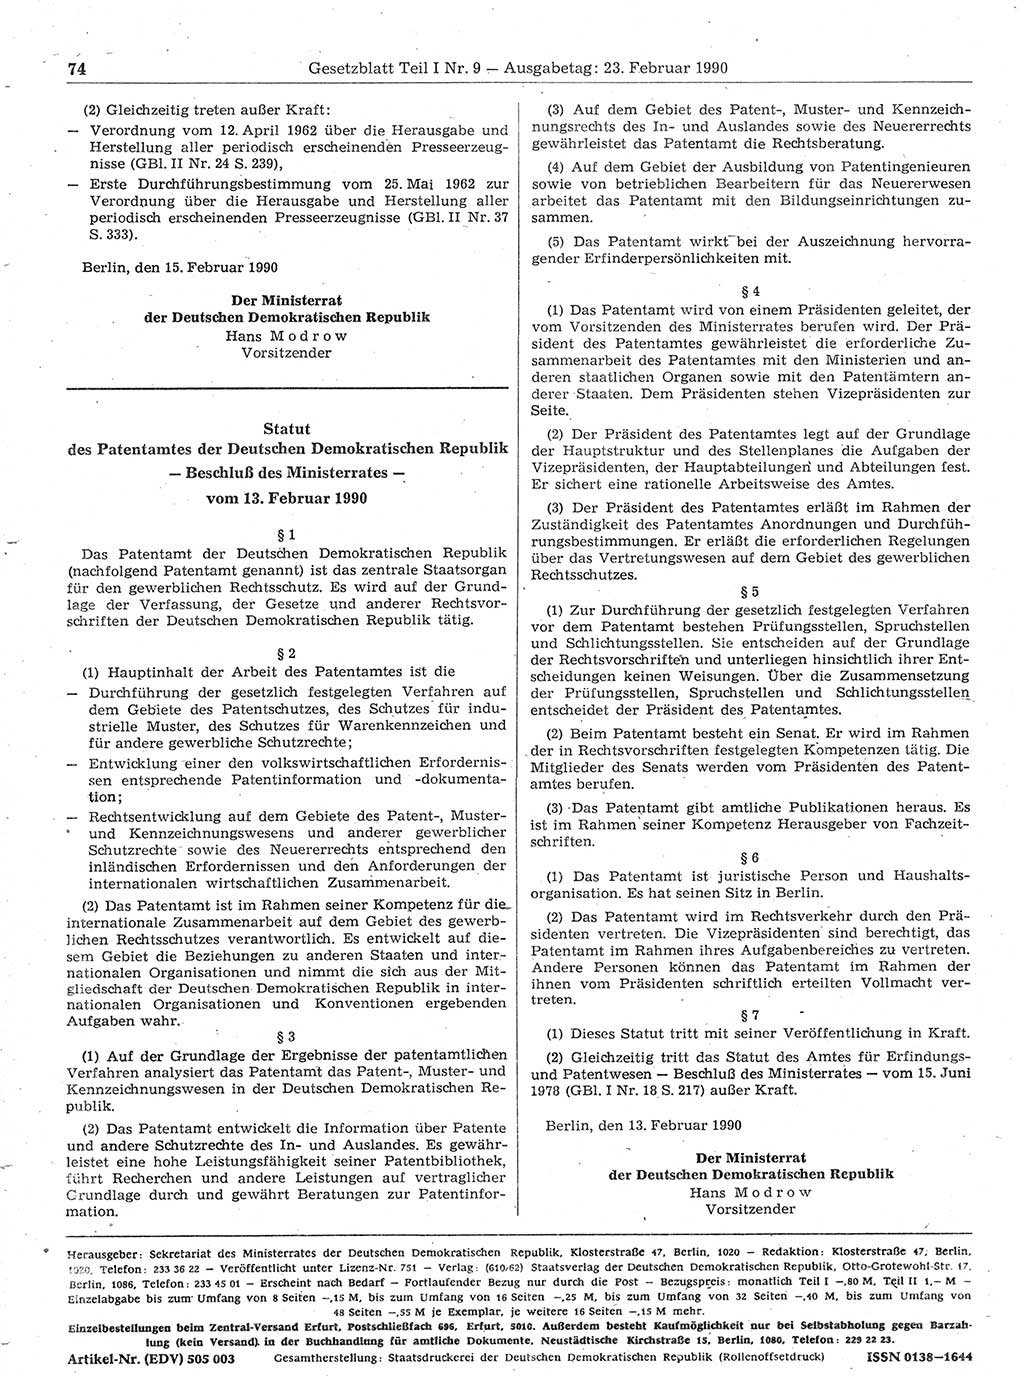 Gesetzblatt (GBl.) der Deutschen Demokratischen Republik (DDR) Teil Ⅰ 1990, Seite 74 (GBl. DDR Ⅰ 1990, S. 74)